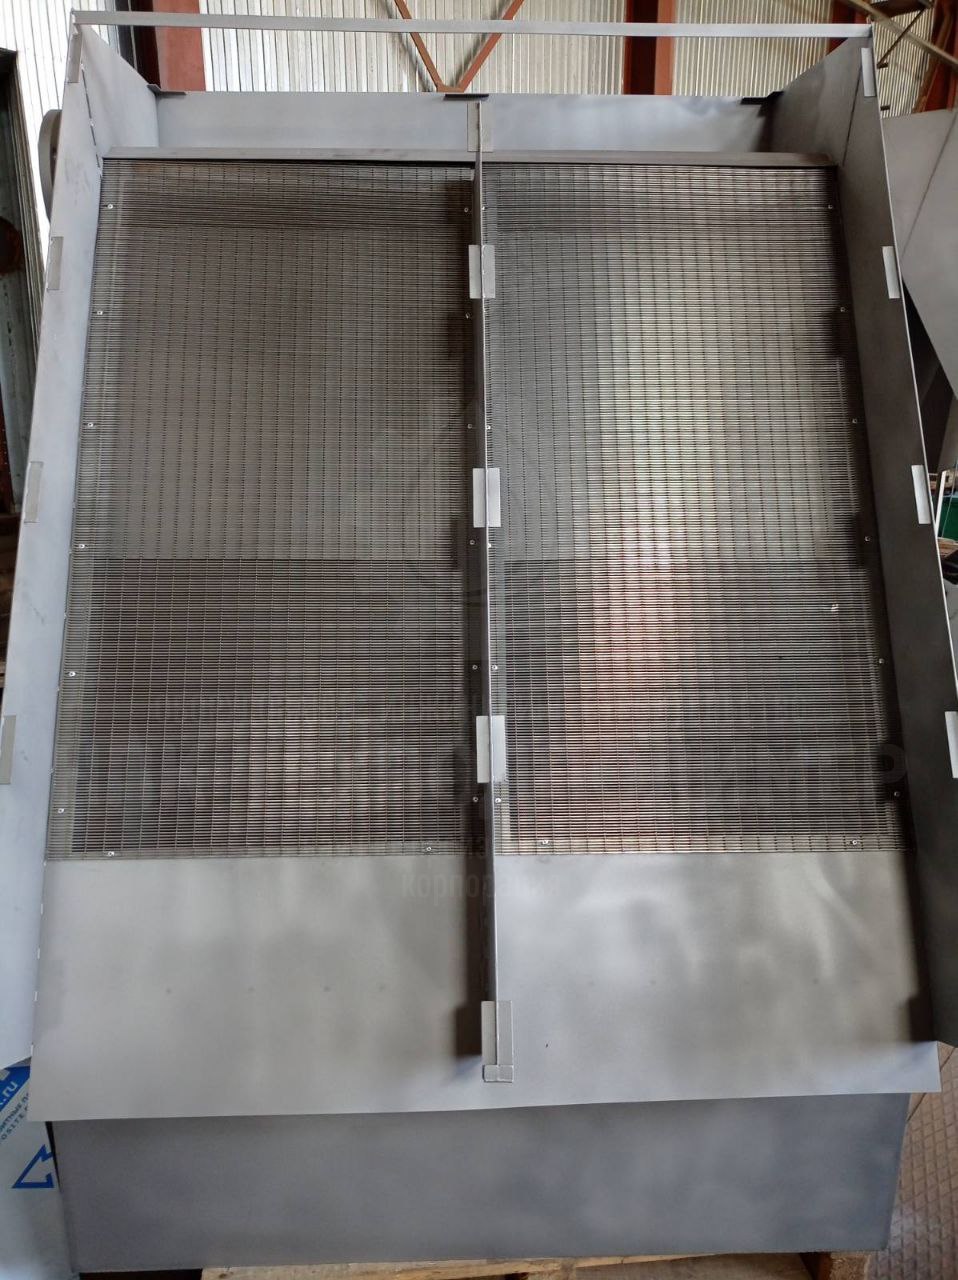 Готовы к отгрузке Устройства Фильтрующие Самоочищающиеся (УФС) производительностью 100 м3/ч. Прозор фильтрующего полотна 2,5мм. Материал изготовления нержавеющая сталь.